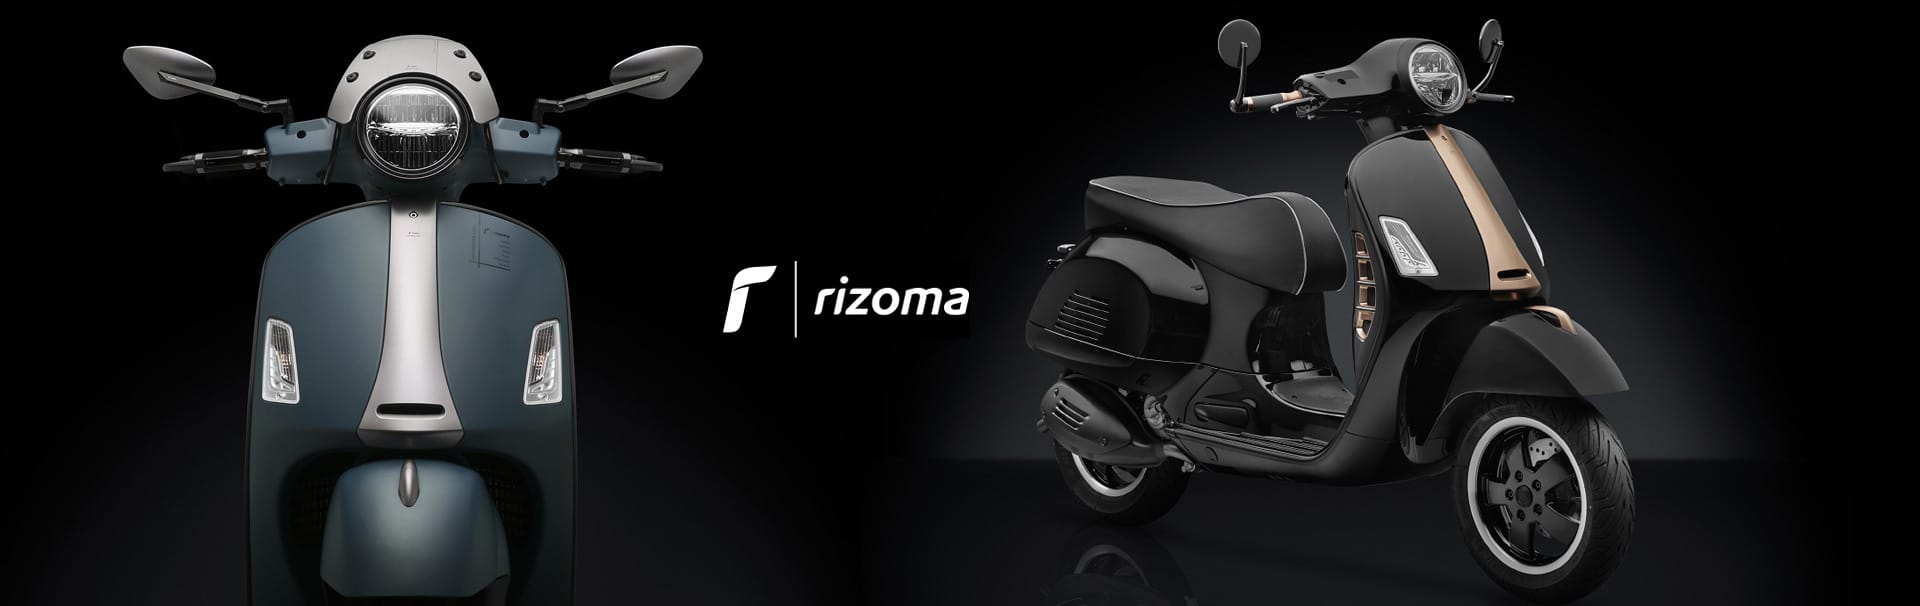 RIZOMA Italienisches Design - Edel Tuning Vespa GTS